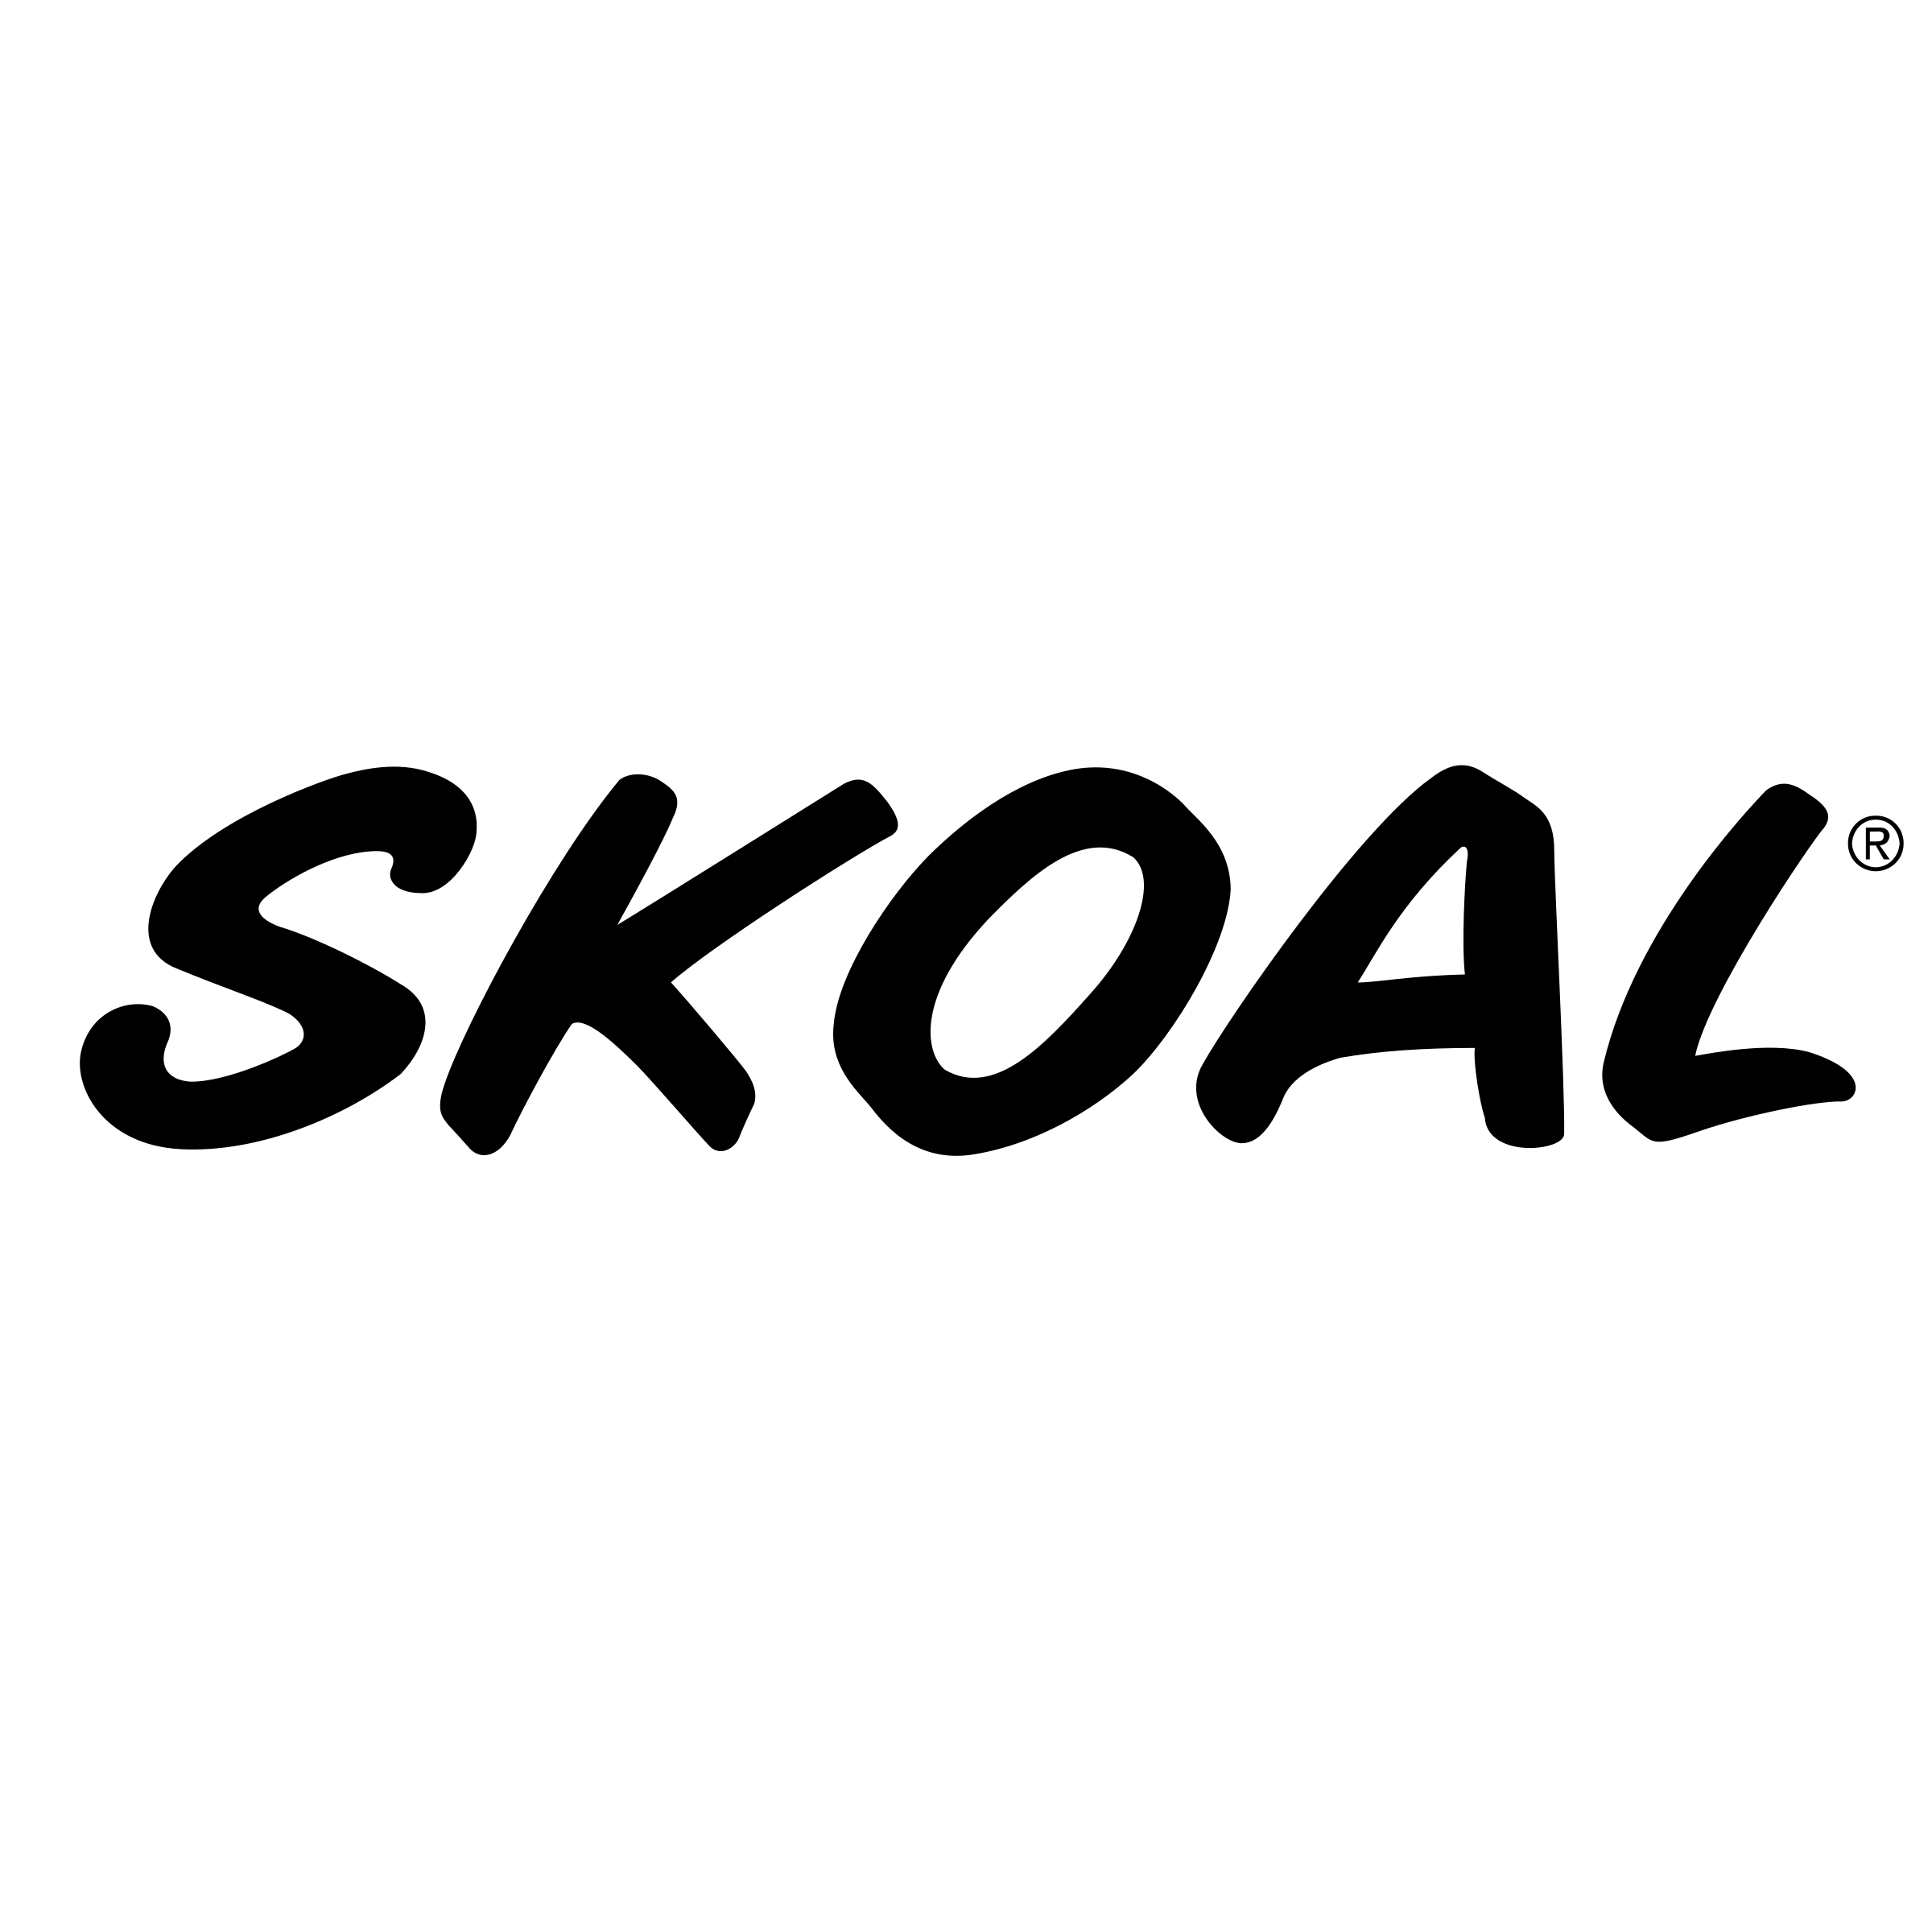 Skoal Logo - Skoal Logo PNG Transparent & SVG Vector